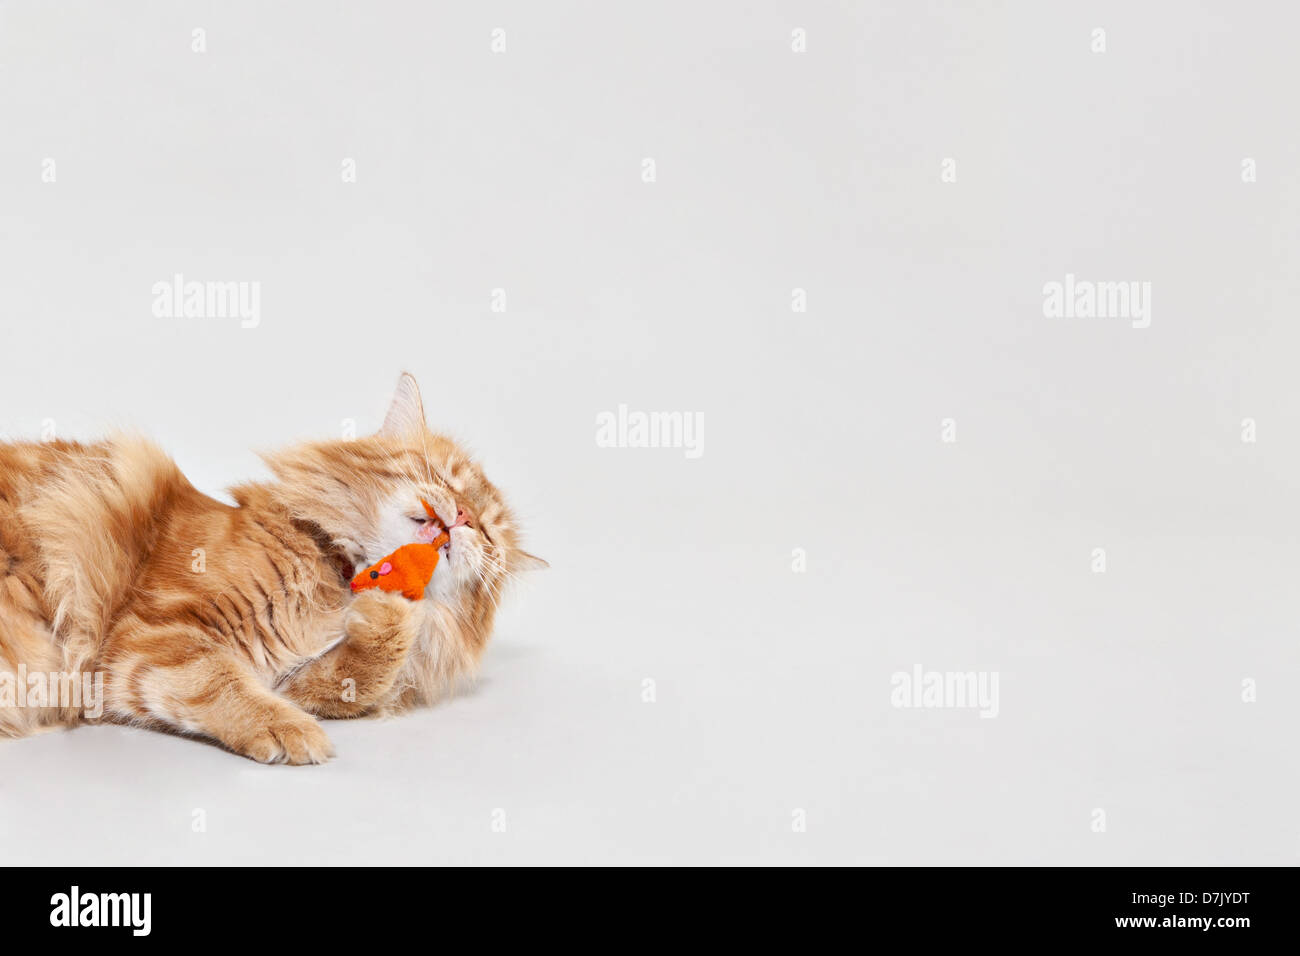 Le gingembre Cymric Manx chat jouant avec la souris orange jouet en studio Banque D'Images